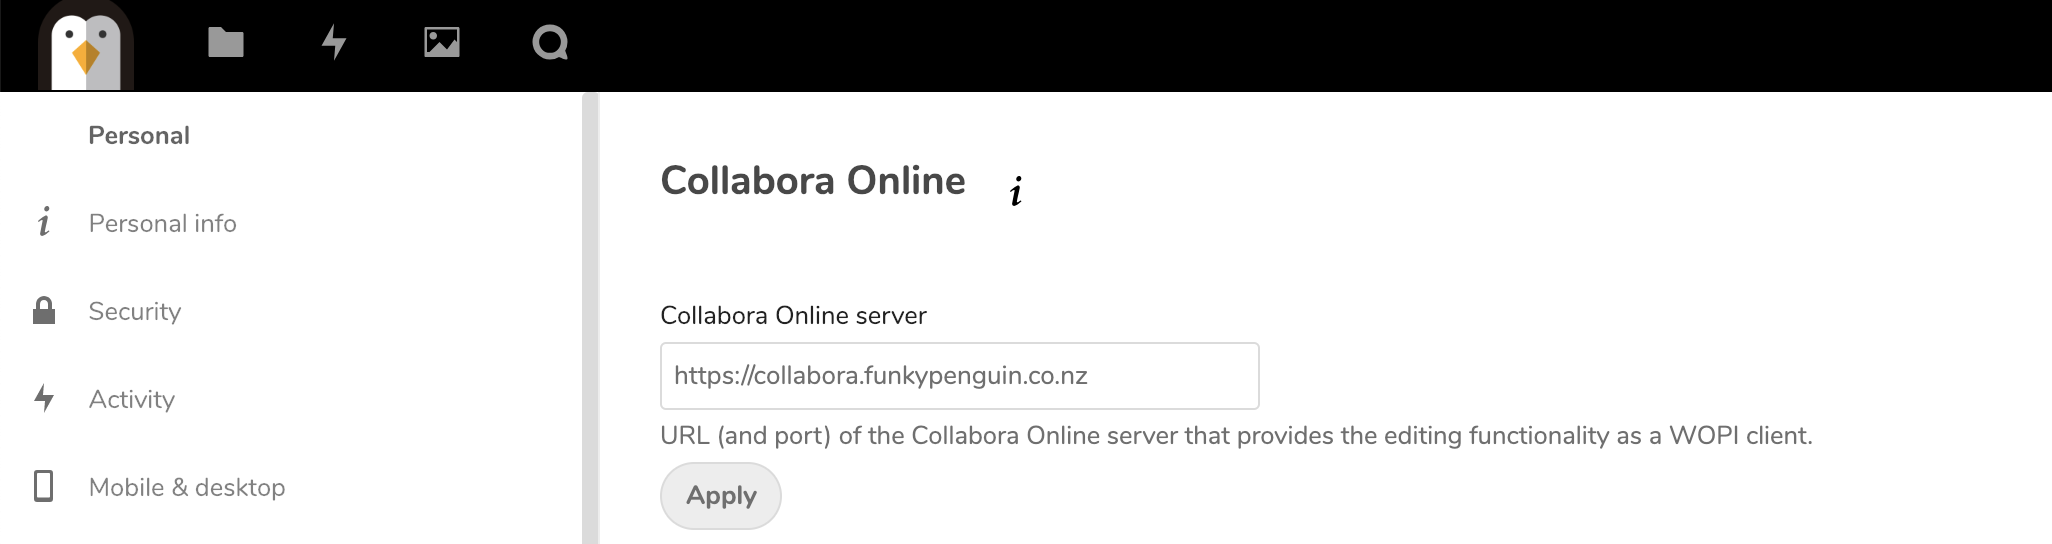 nextcloud collabora online access forbidden